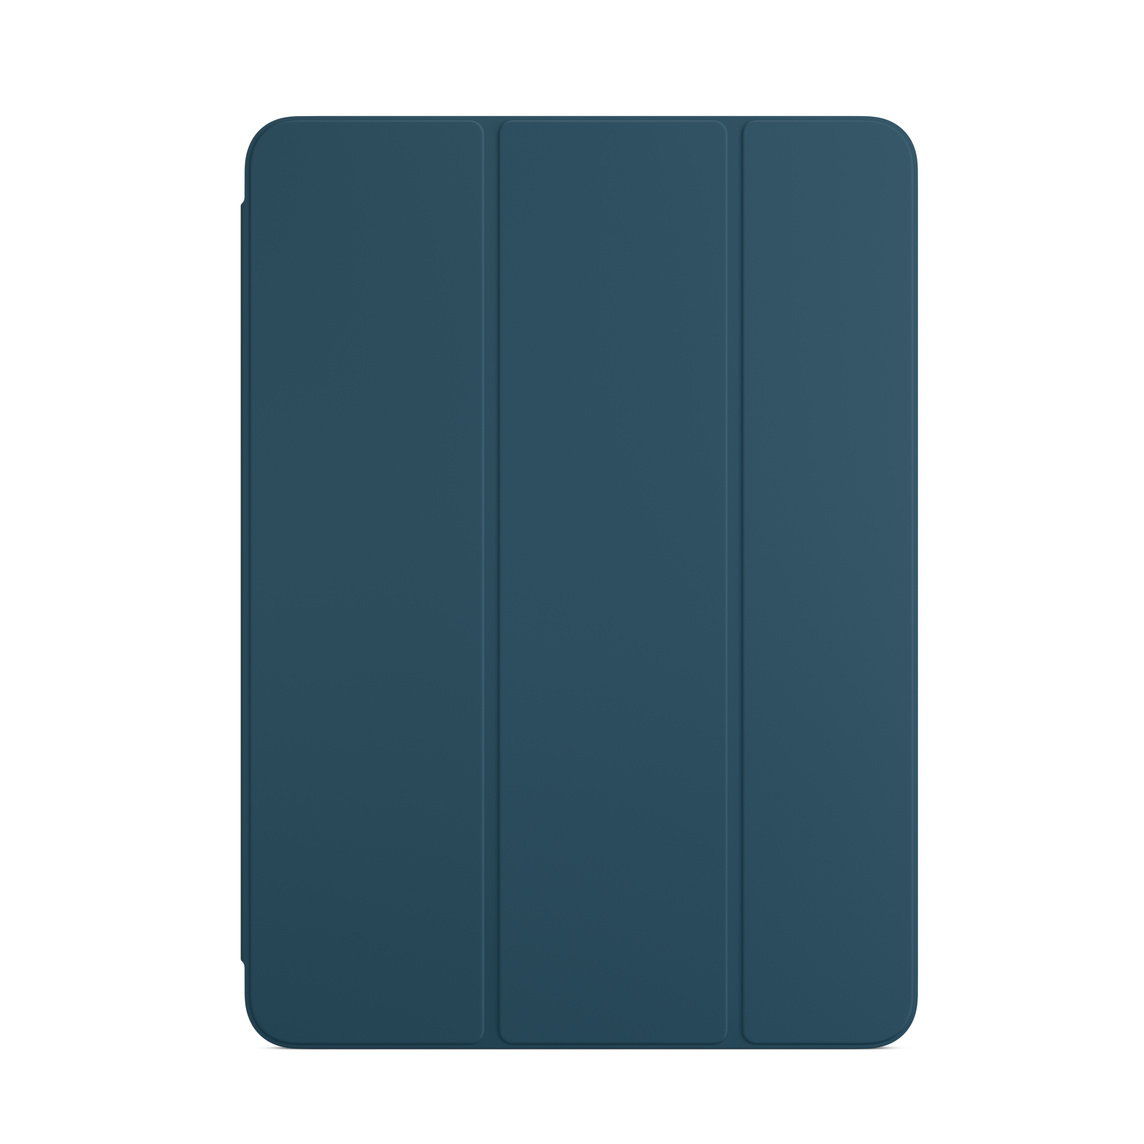 Smart Folio für iPad Air in Marineblau.